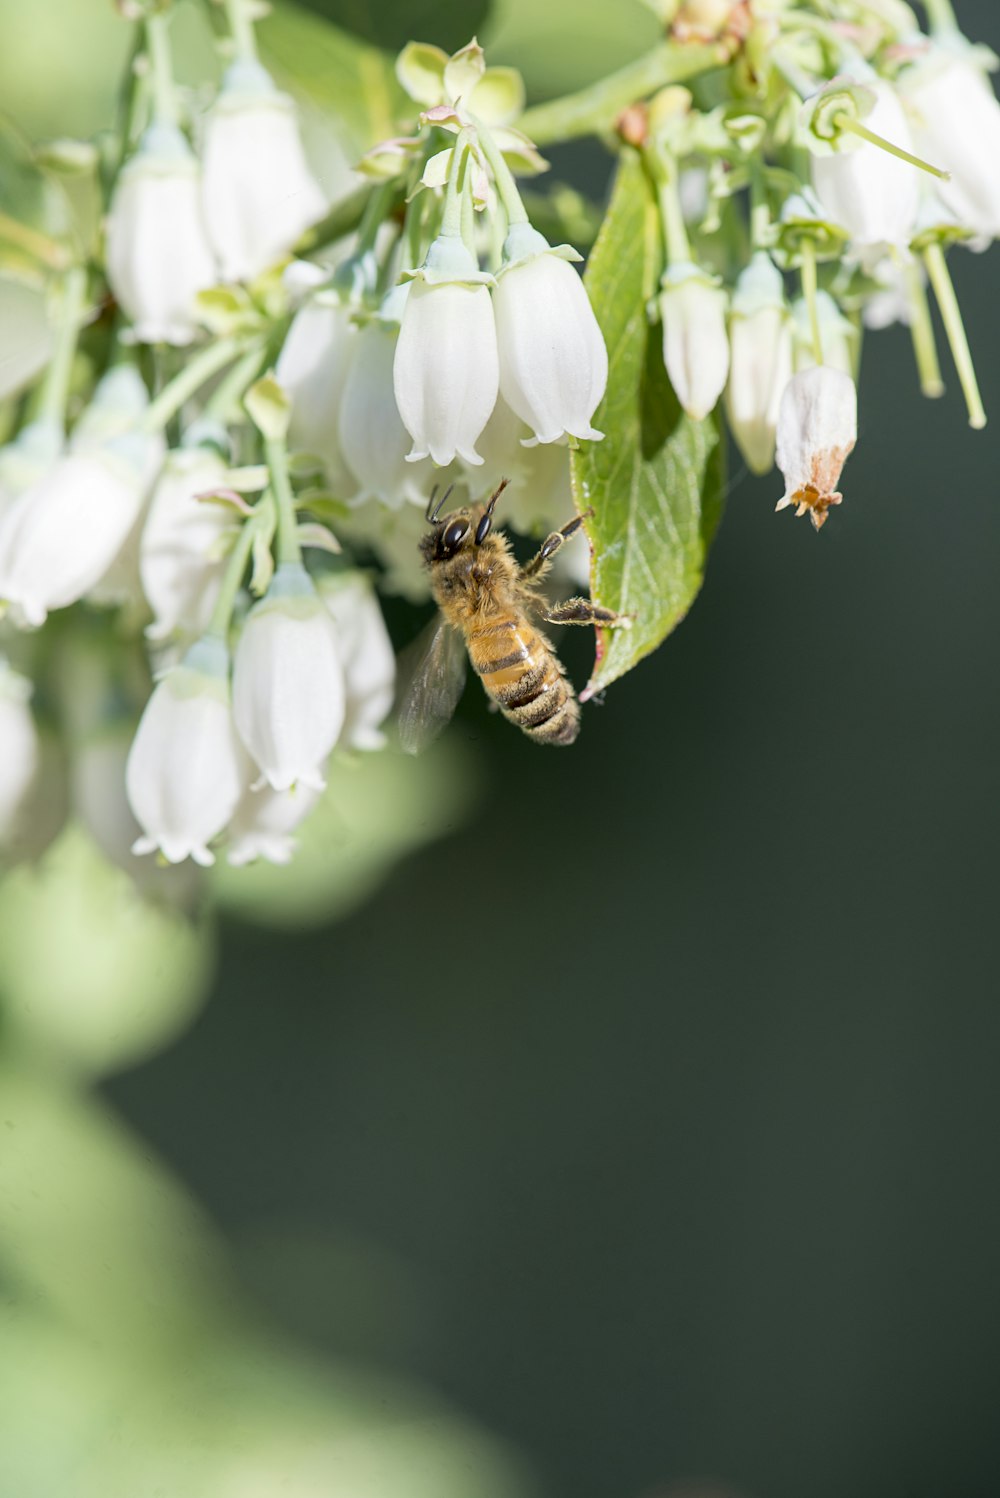 Une abeille est sur une fleur blanche avec des feuilles vertes